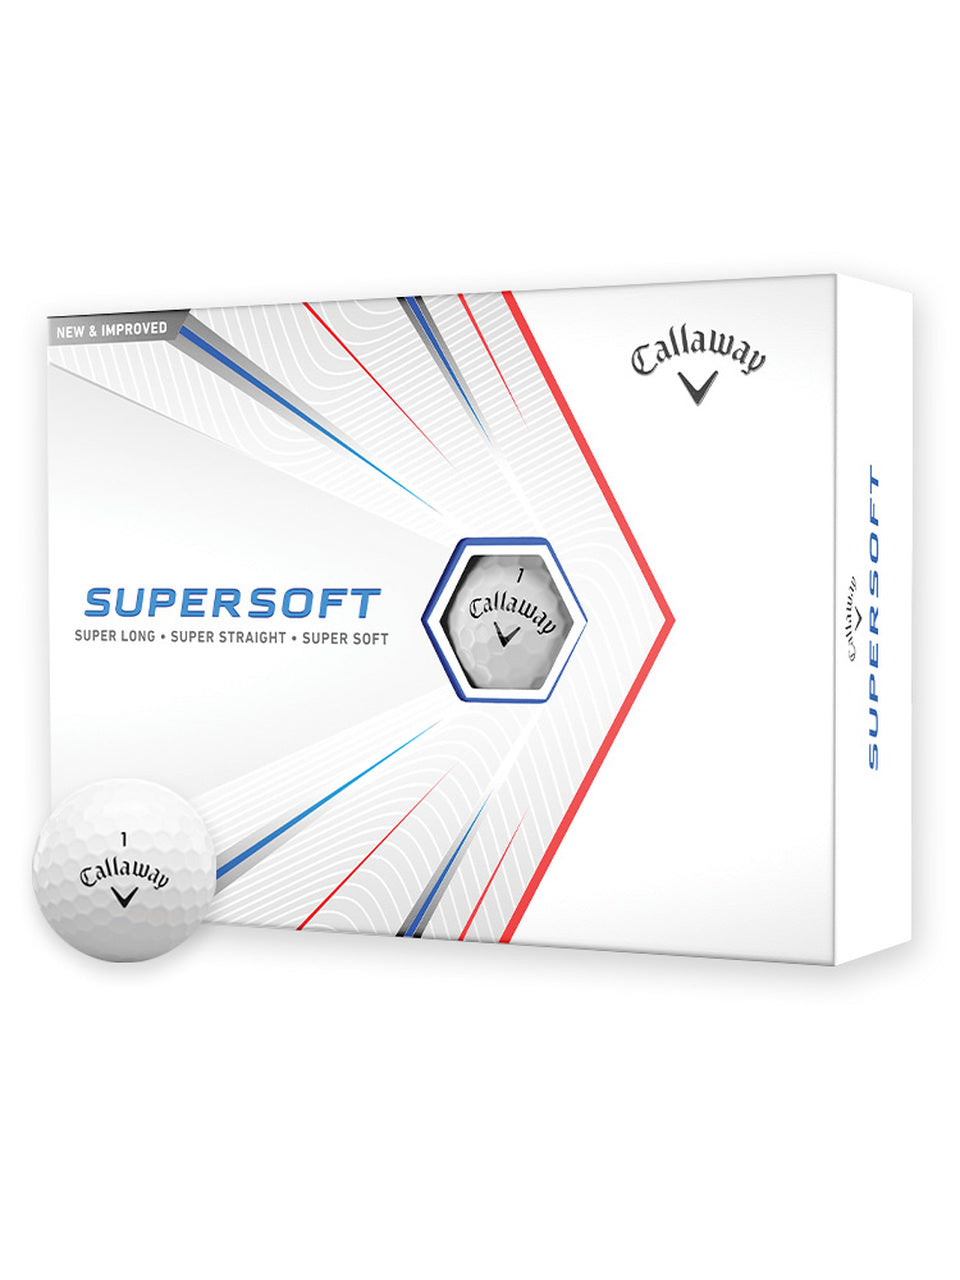 Callaway Supersoft 21 Golf Balls - 1 Dozen White